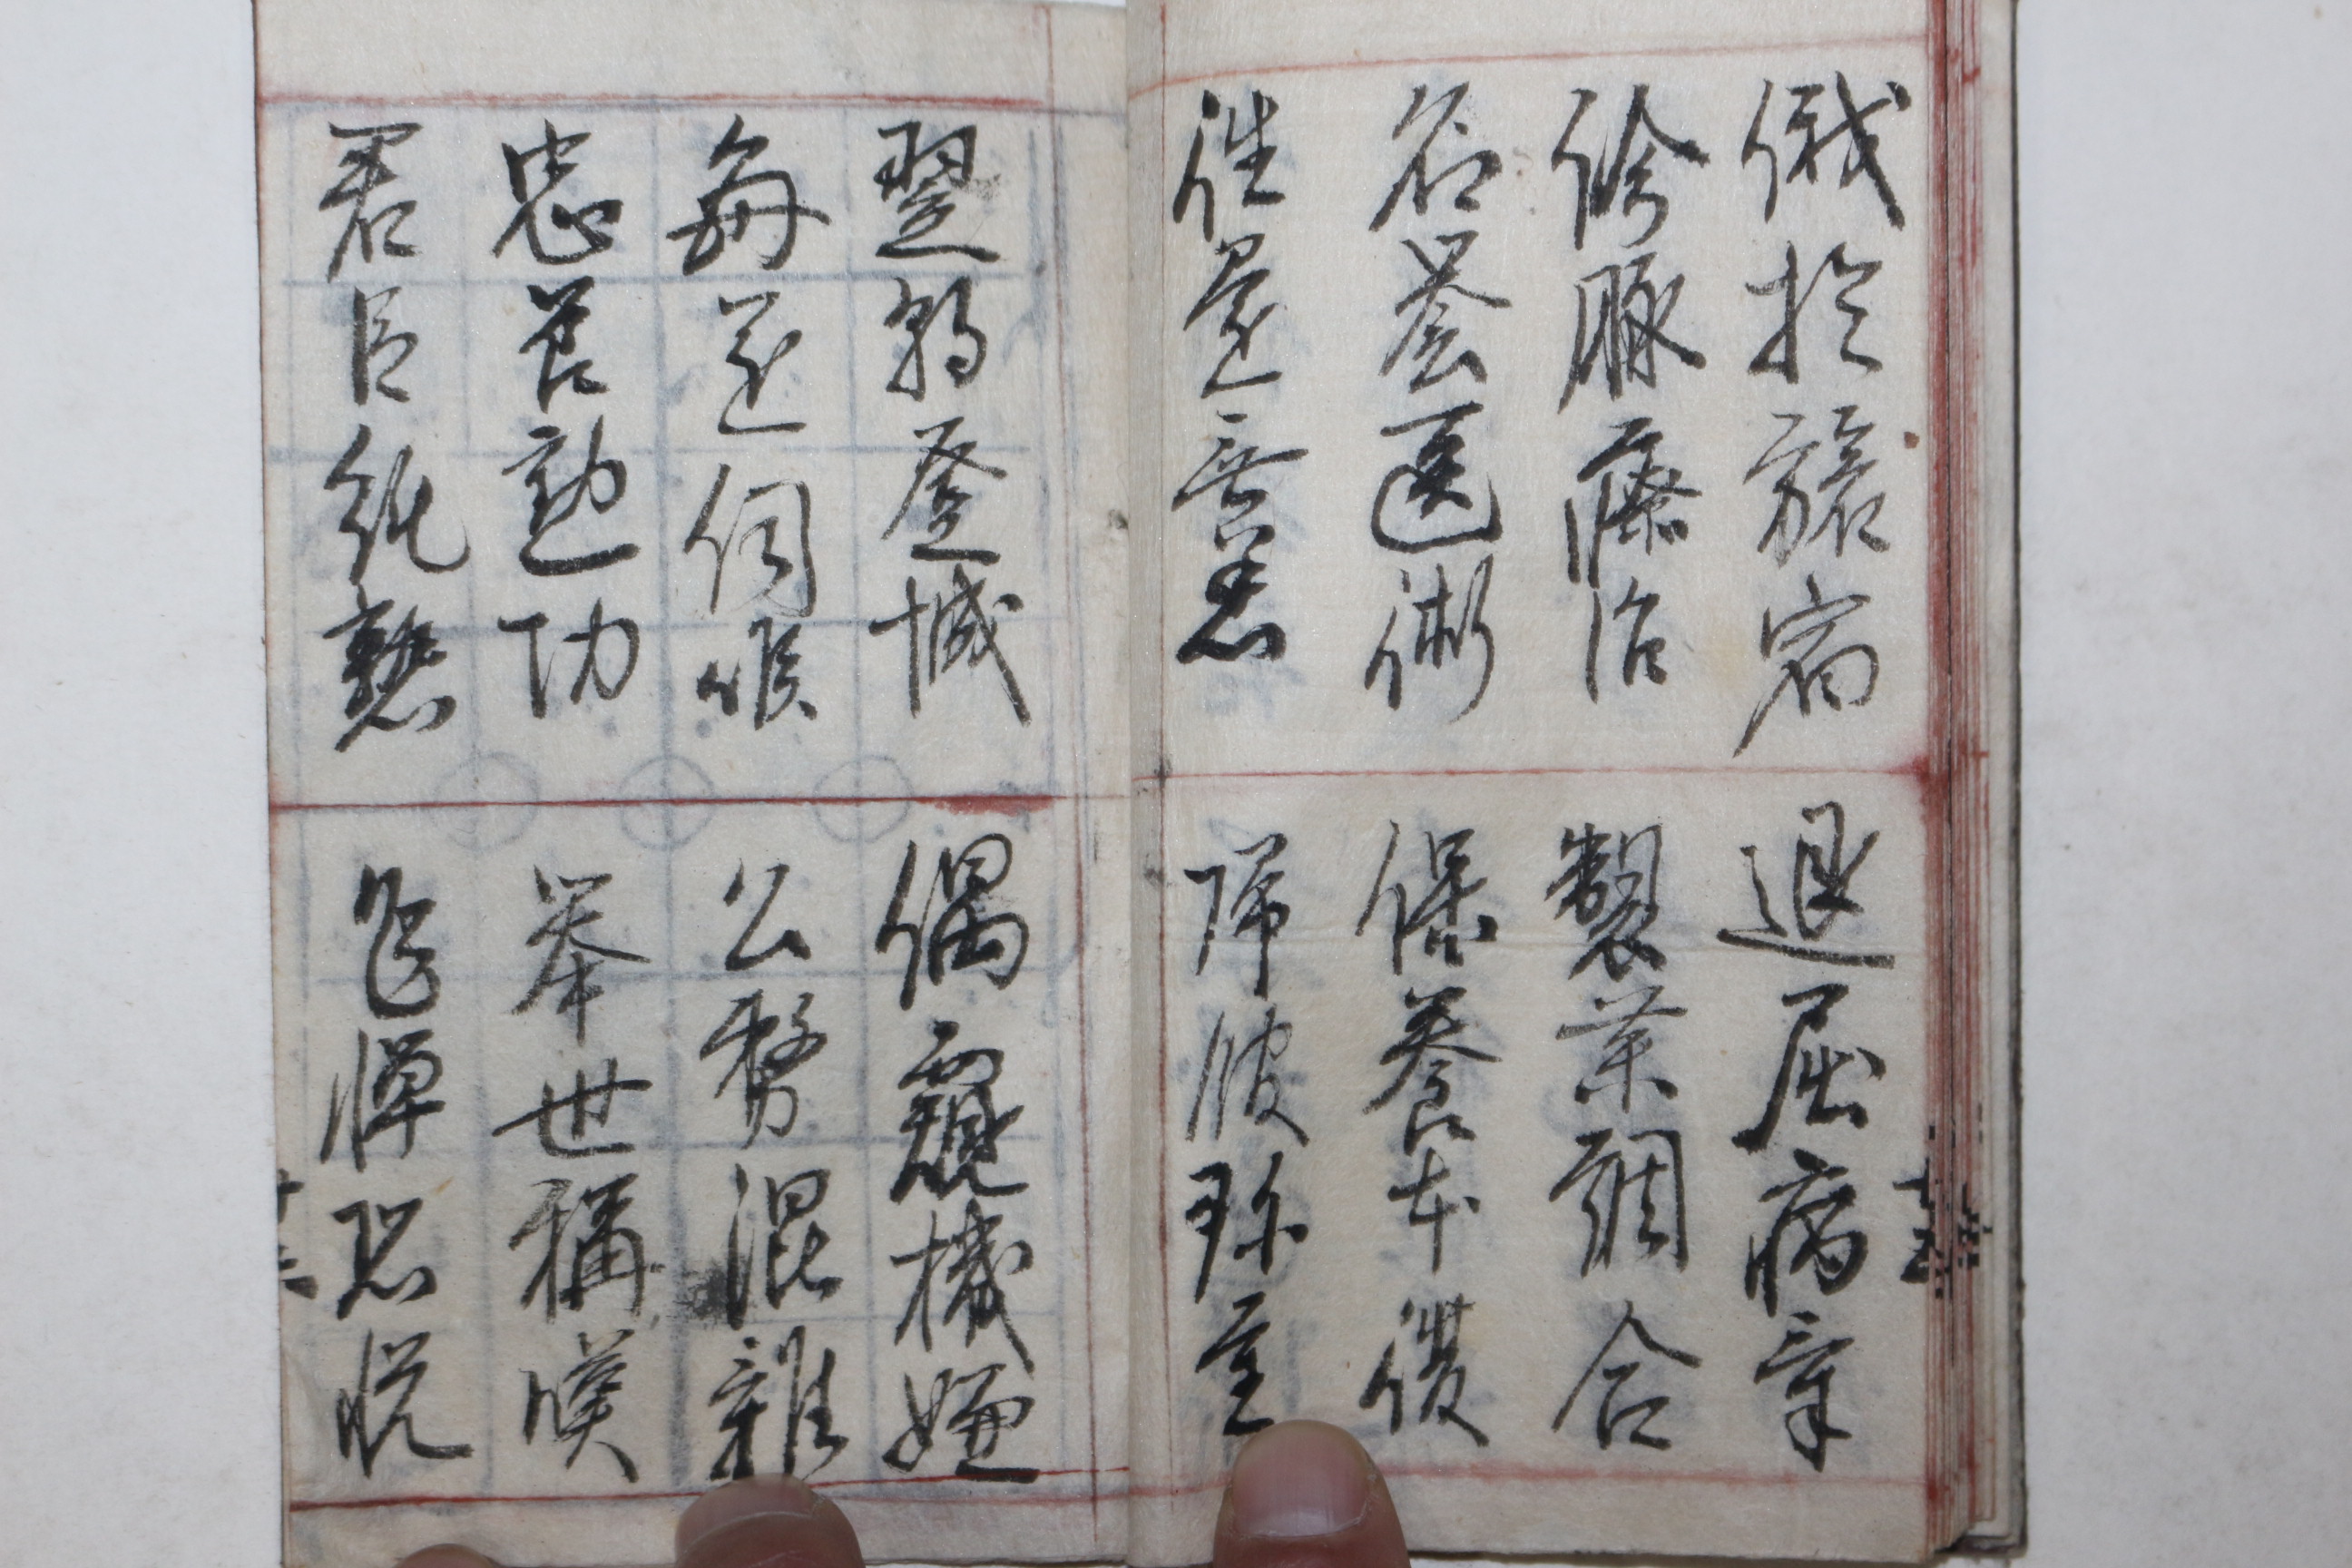 에도시기 일본필사본 천자문